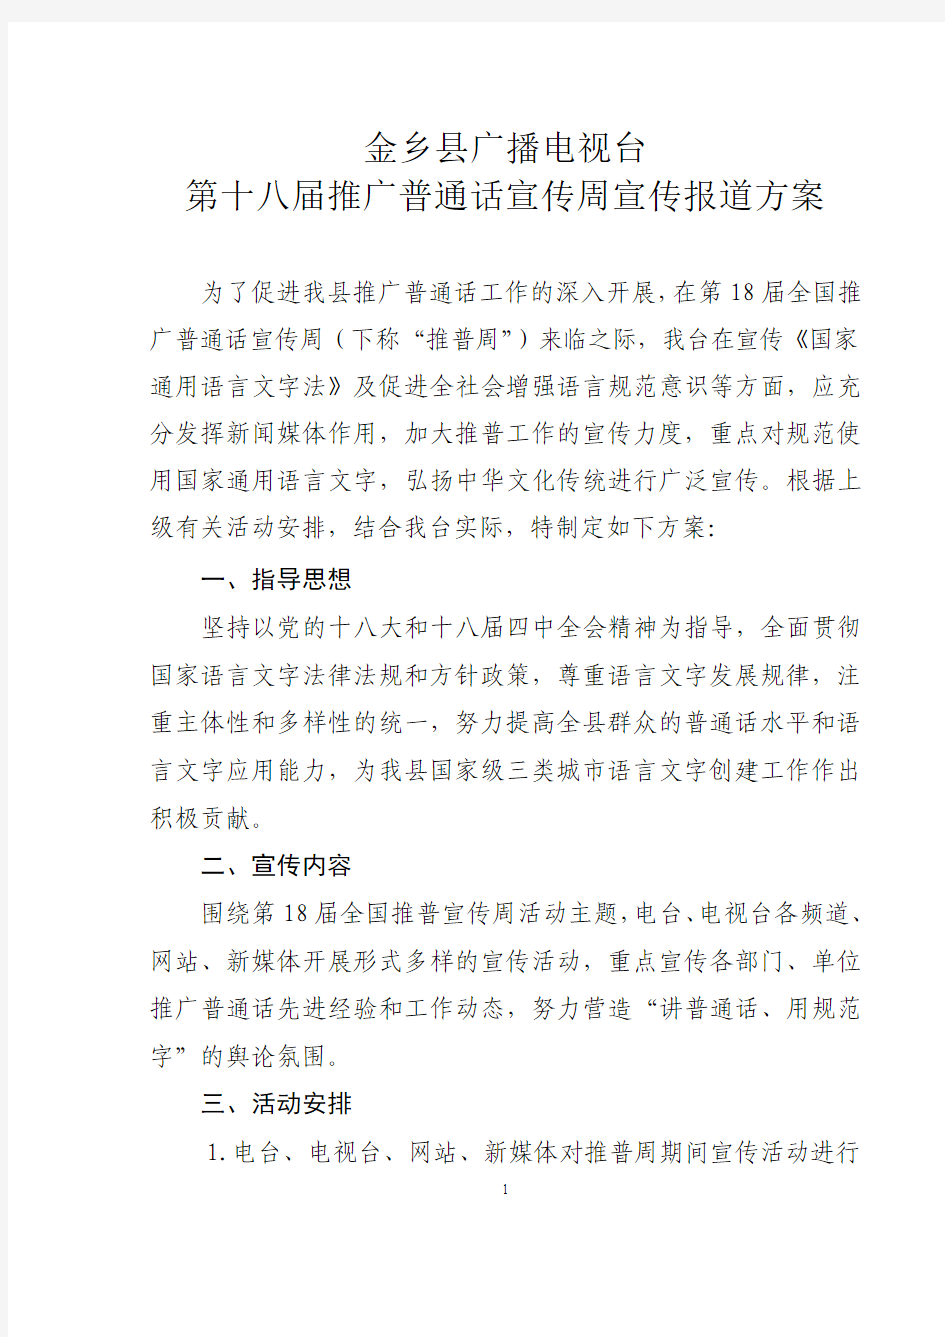 金乡县广播电视台第18届推广普通话宣传周宣传报道方案